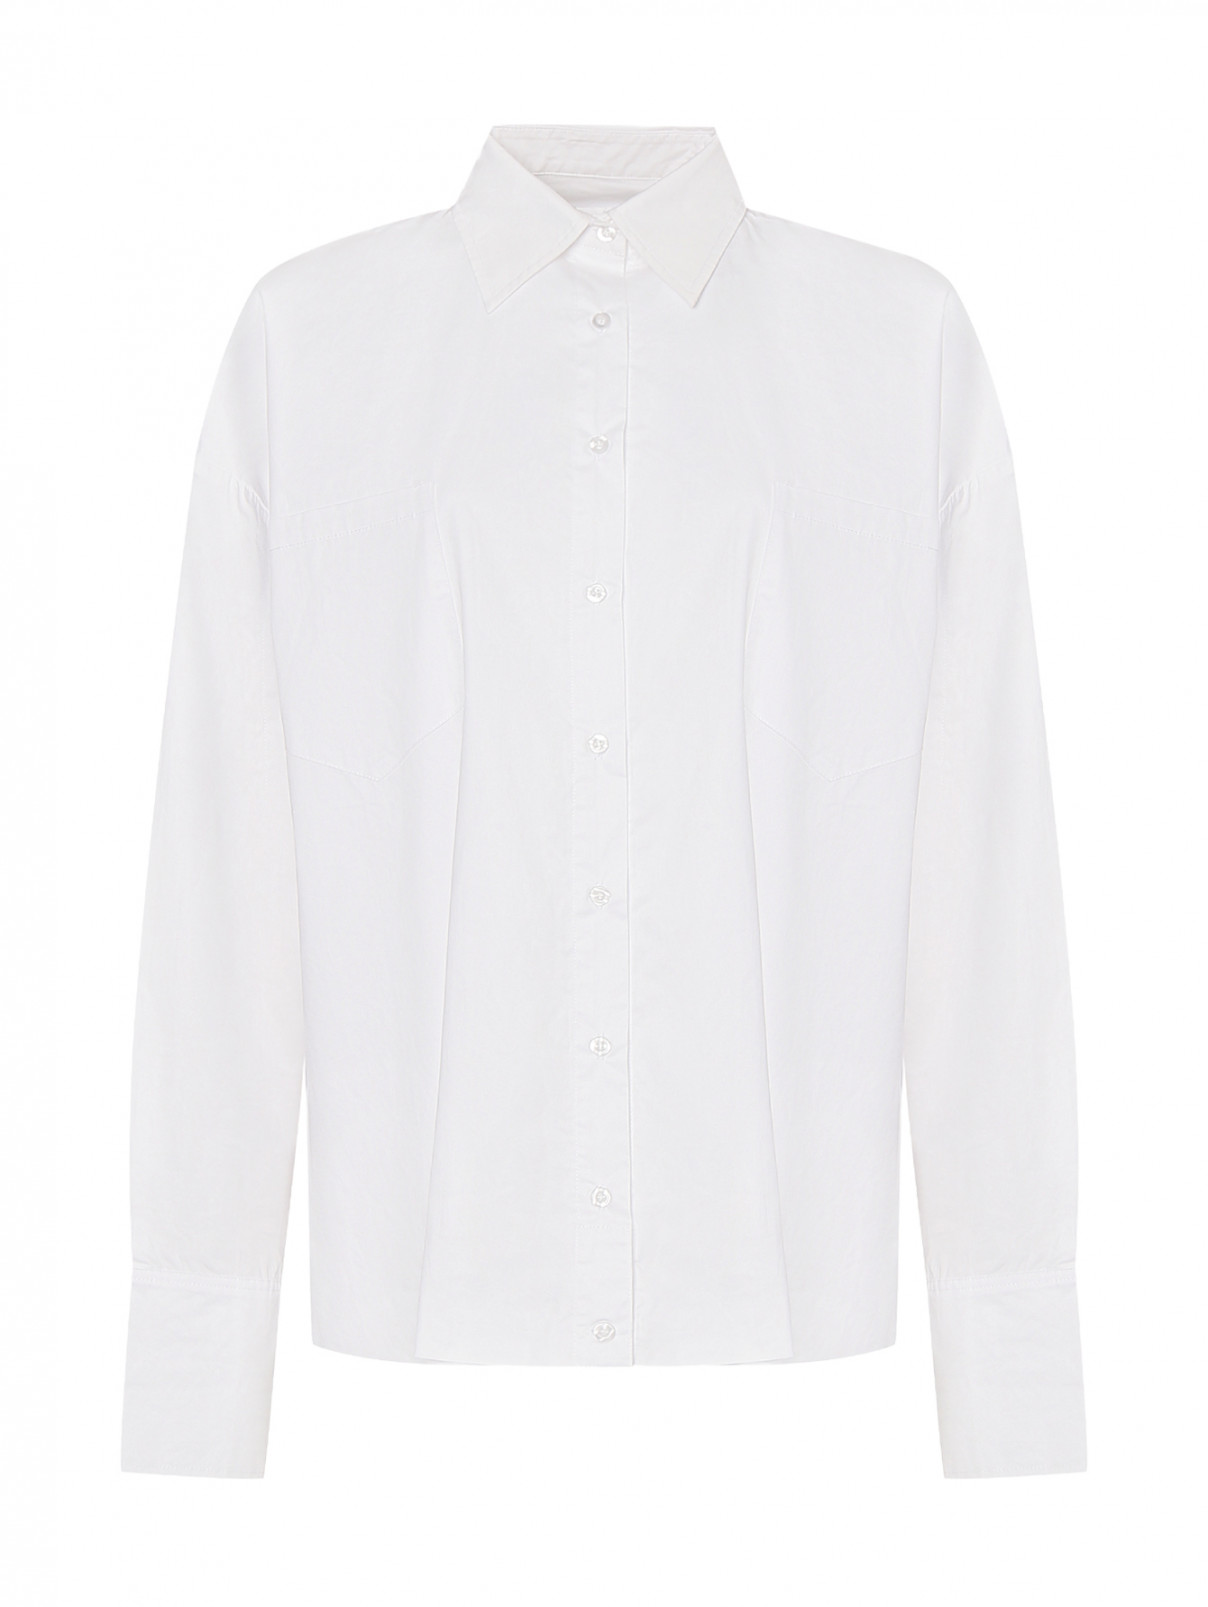 Рубашка из хлопка с накладными карманами Ombra  –  Общий вид  – Цвет:  Белый